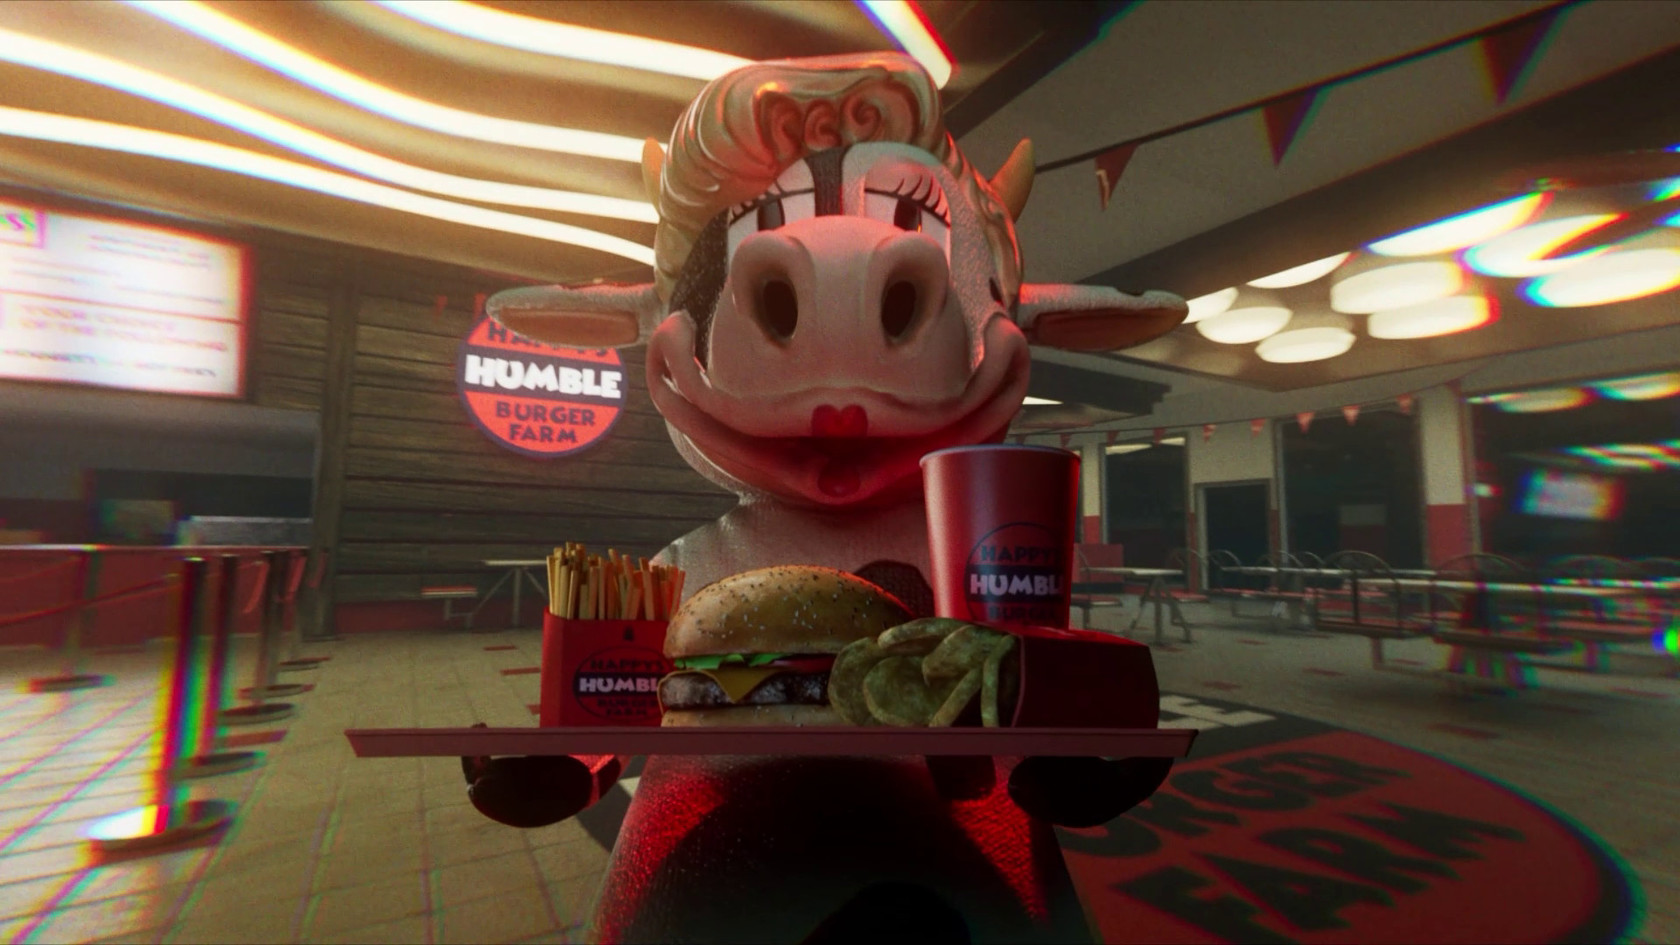 Happy's Humble Burger Farm - Jogo completo (Steam)